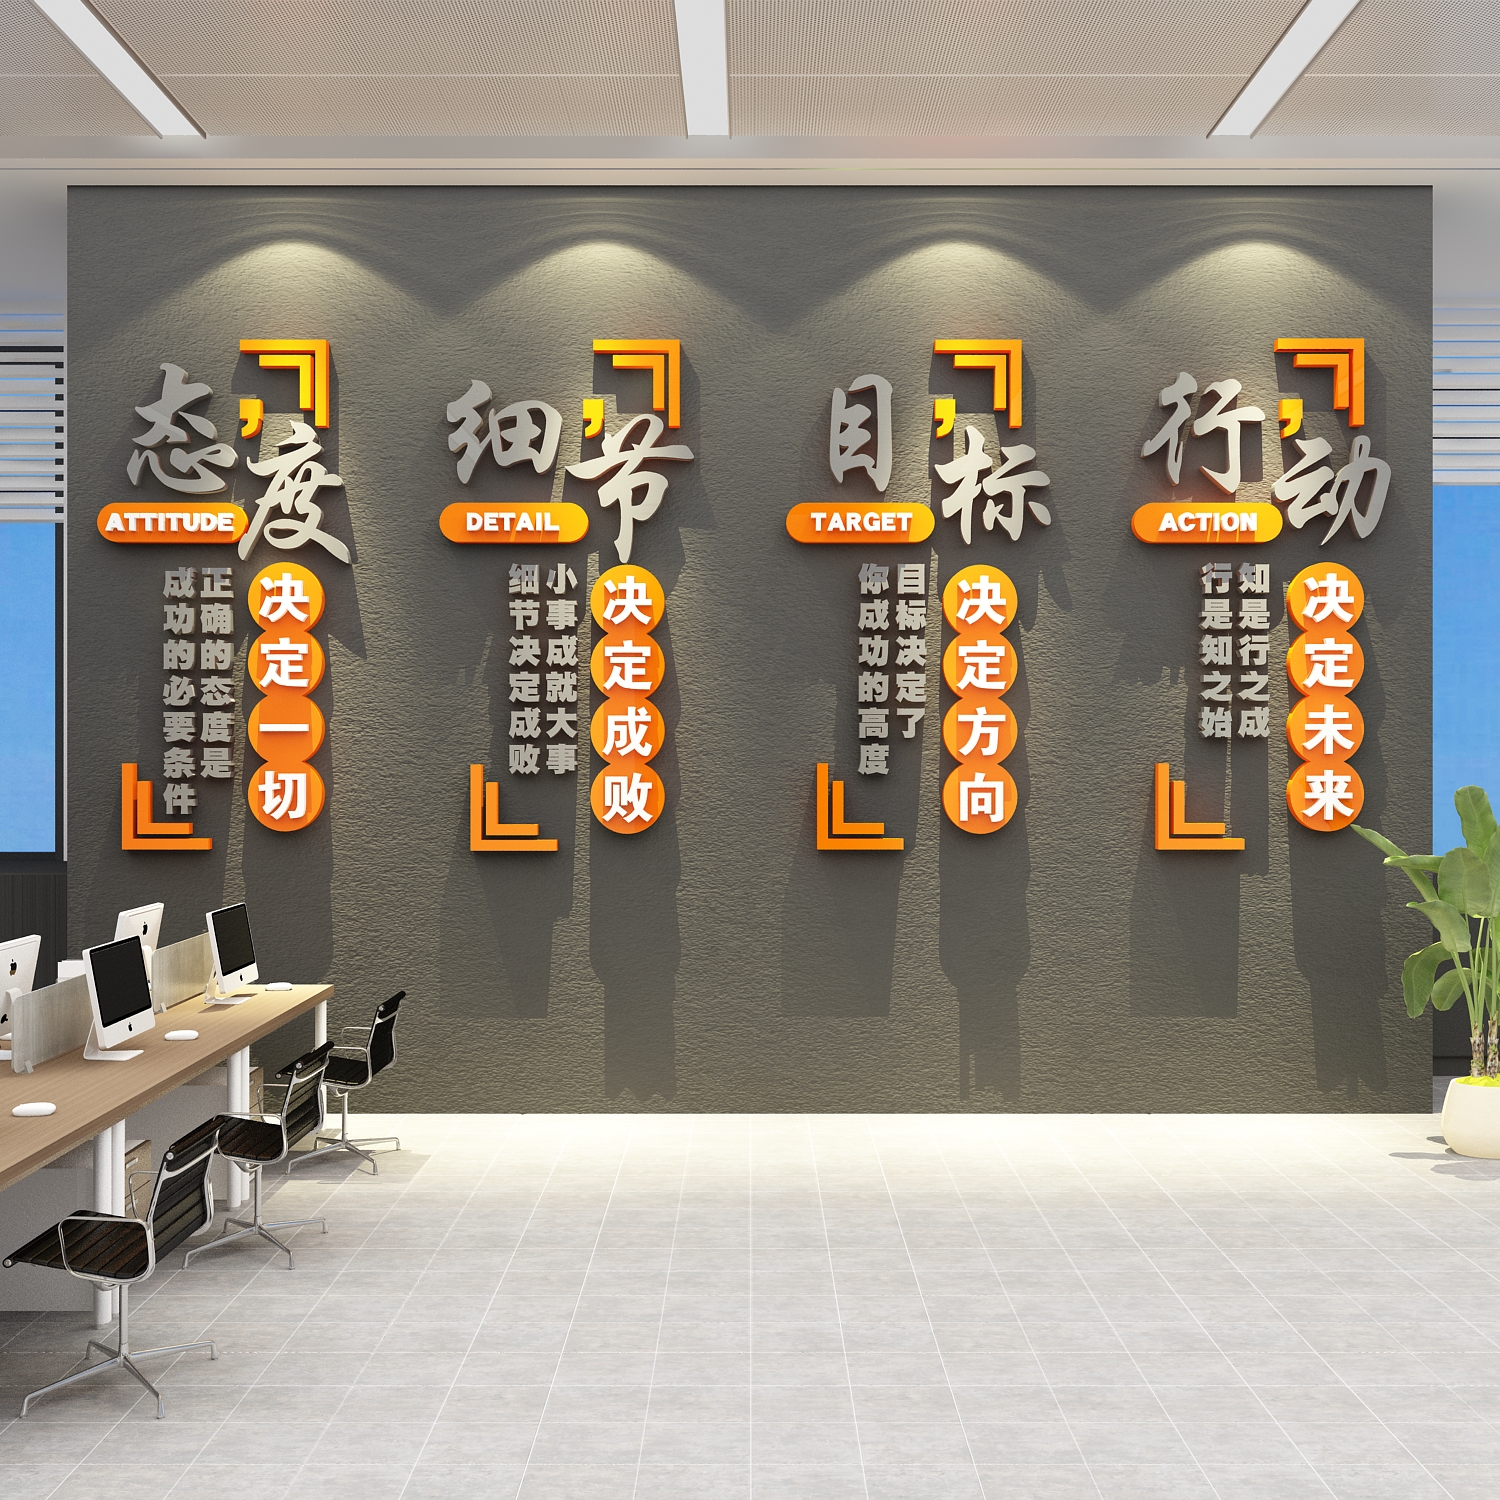 公司企业文化会议办公室墙面装饰贴画氛围布置高级感团队励志标语